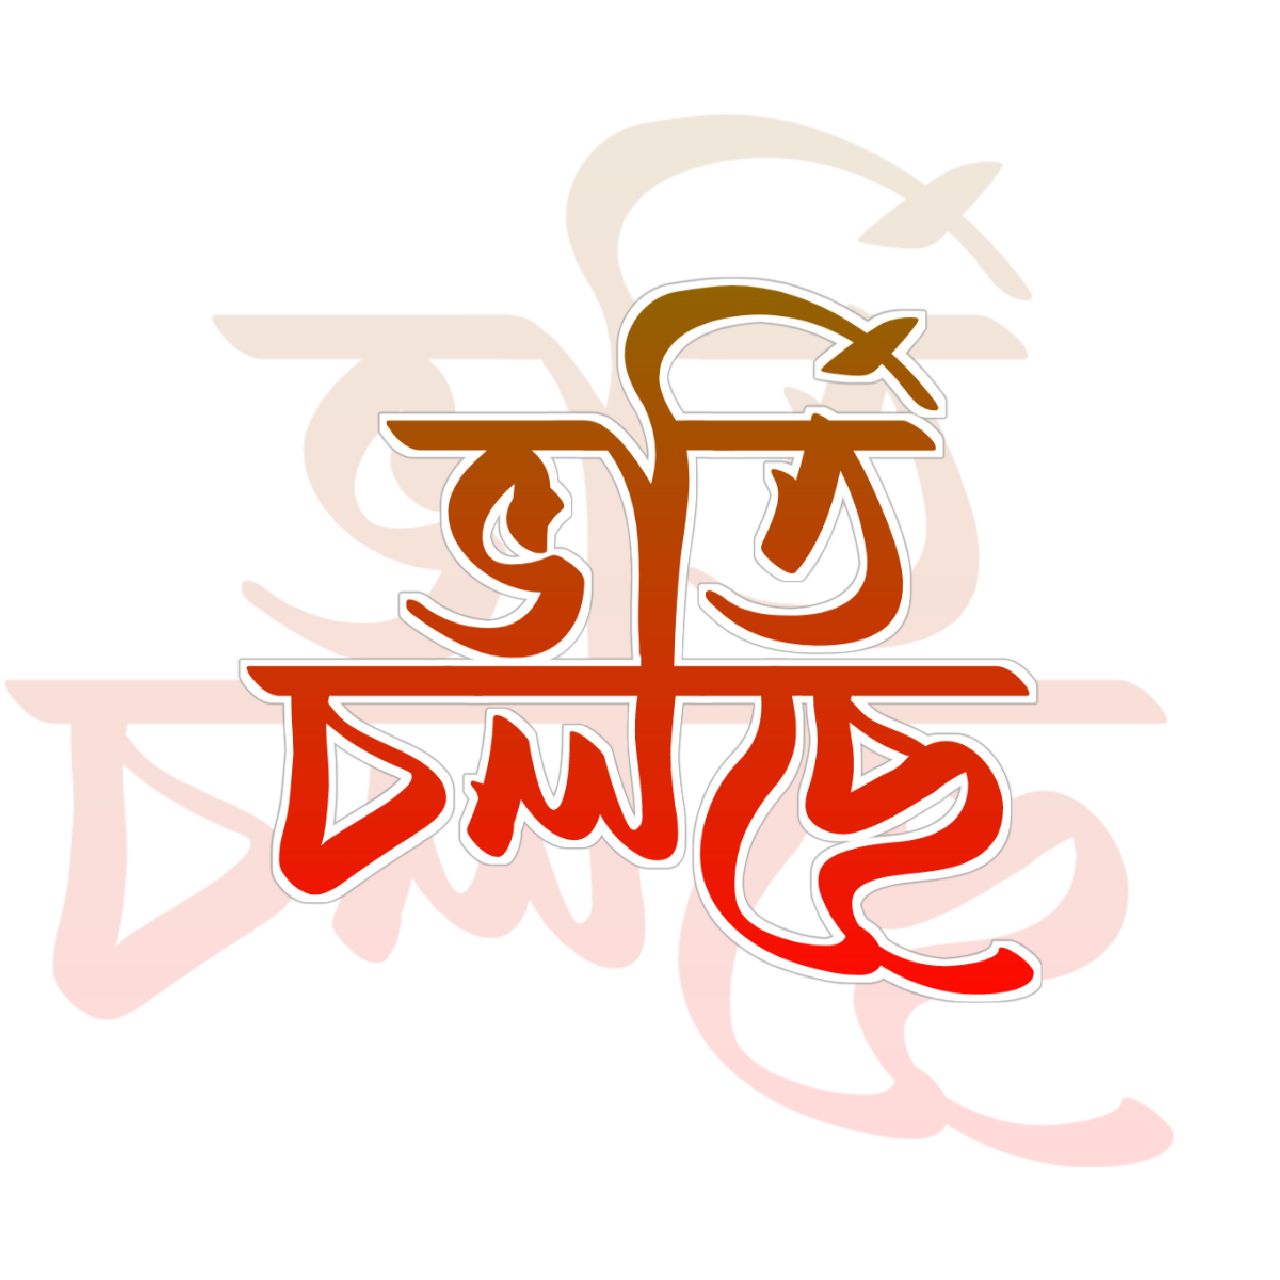 ভর্তি চলছে টাইপোগ্রাফি ।Bangla Typhography PNG